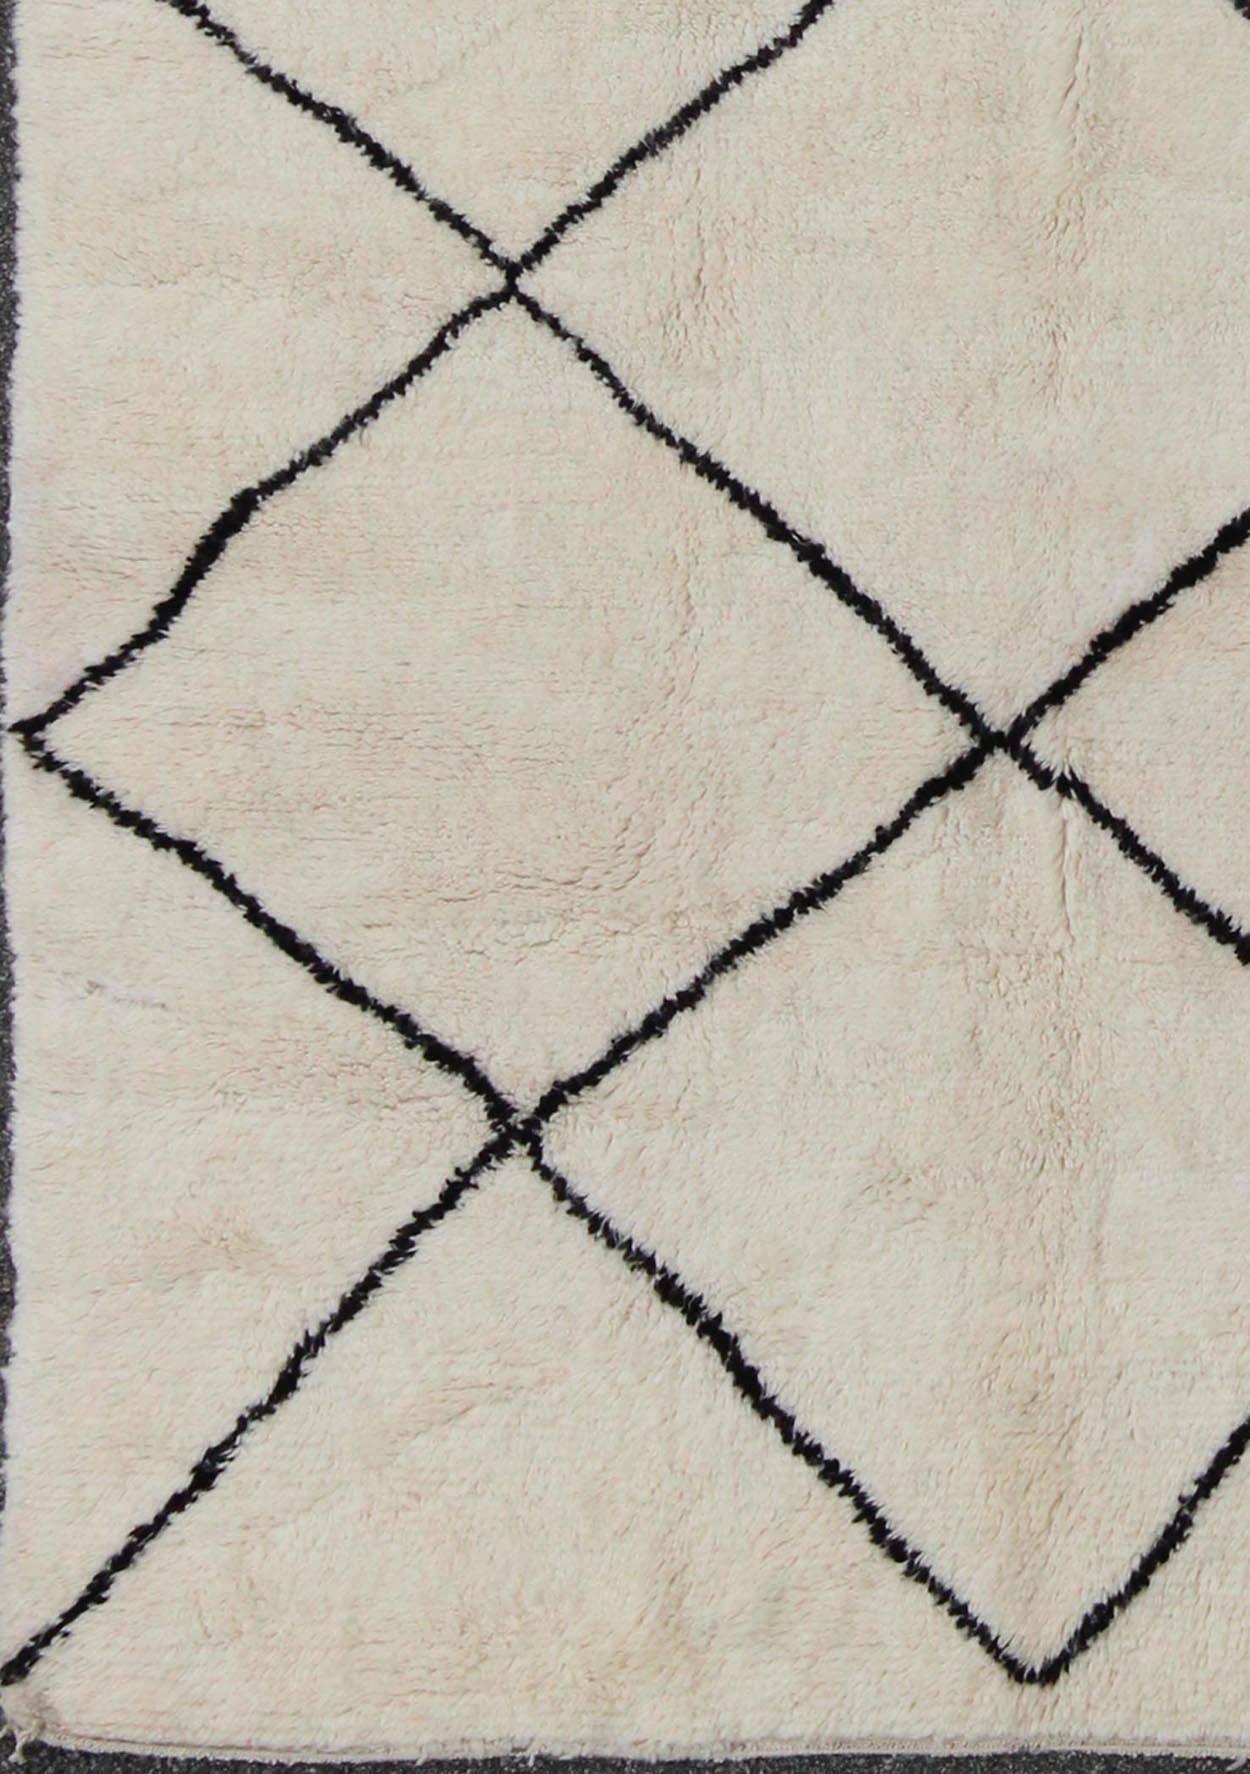 Zeitgenössischer/Moderner marokkanischer Teppich Vintage mit braunem und elfenbeinfarbenem Rautenmuster, Teppich 17-0901, Herkunftsland/Typ: Marokko / Marokkanisch, um 1960

Dieser marokkanische Stammesteppich aus den 1960er Jahren weist ein